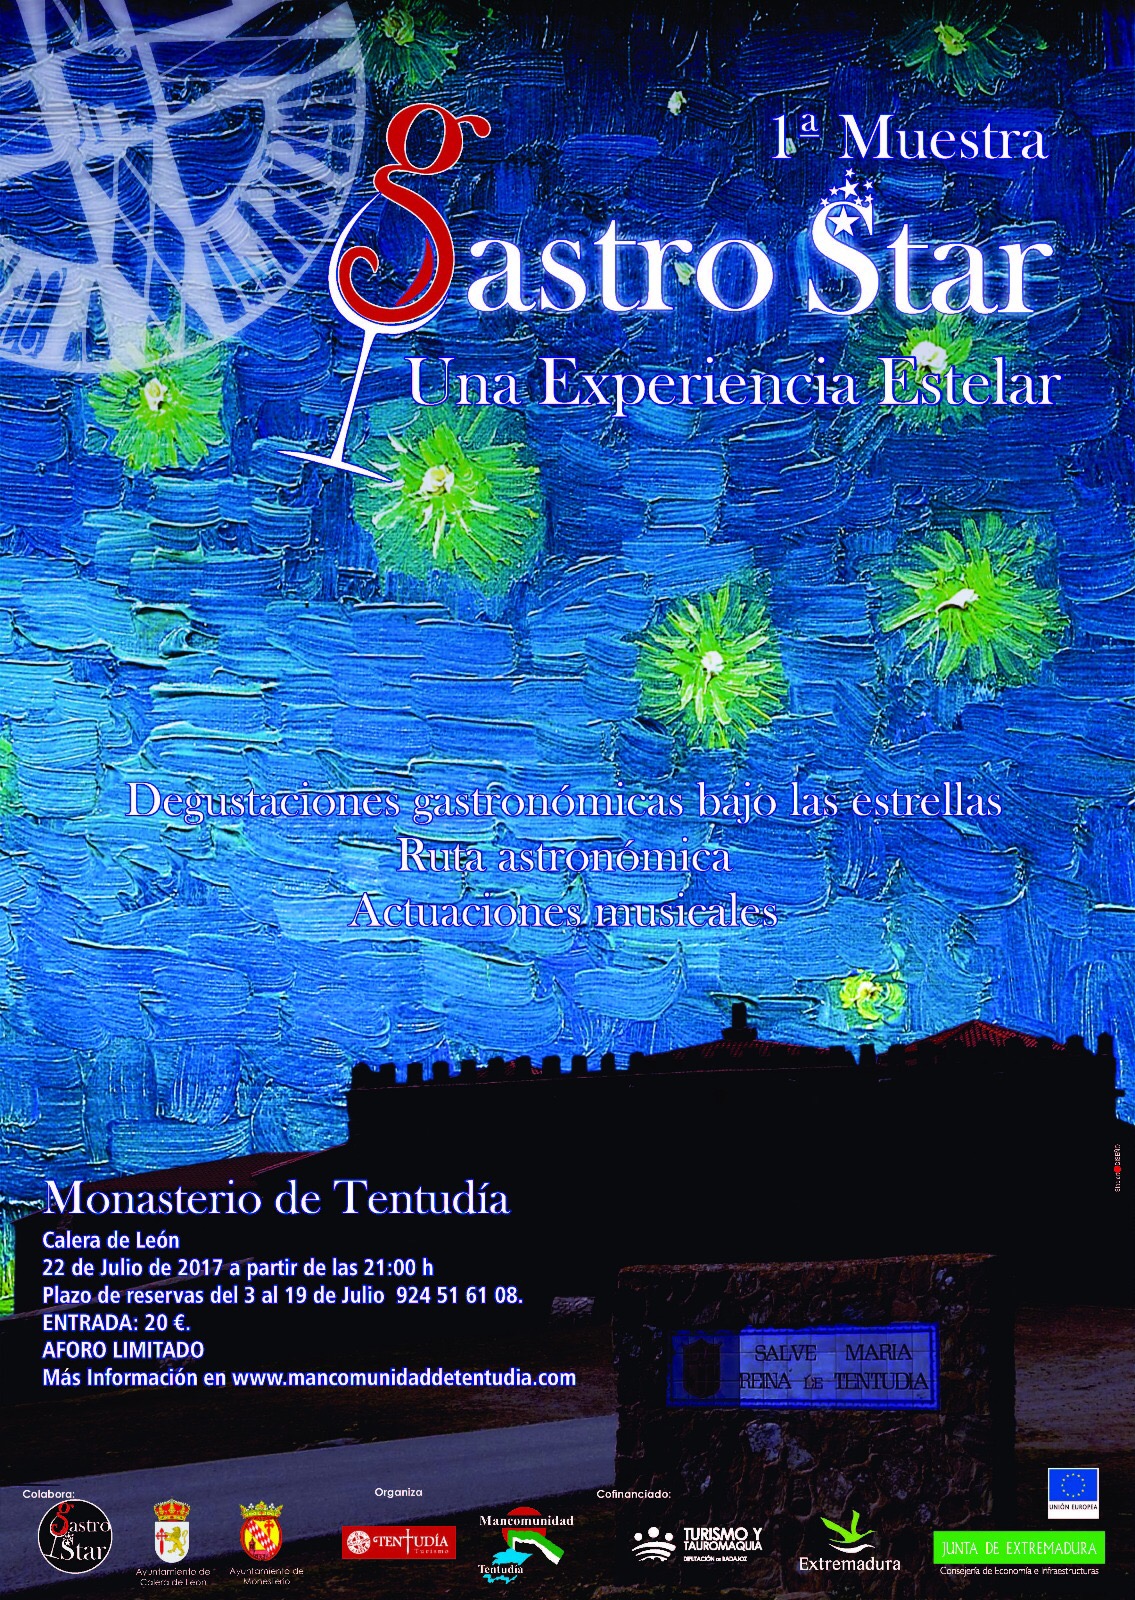 Astroturismo; Alojamiento Turístico; Actividades Astronómicas; Casas Rurales; Entre Encinas y Estrellas; Gastro Star